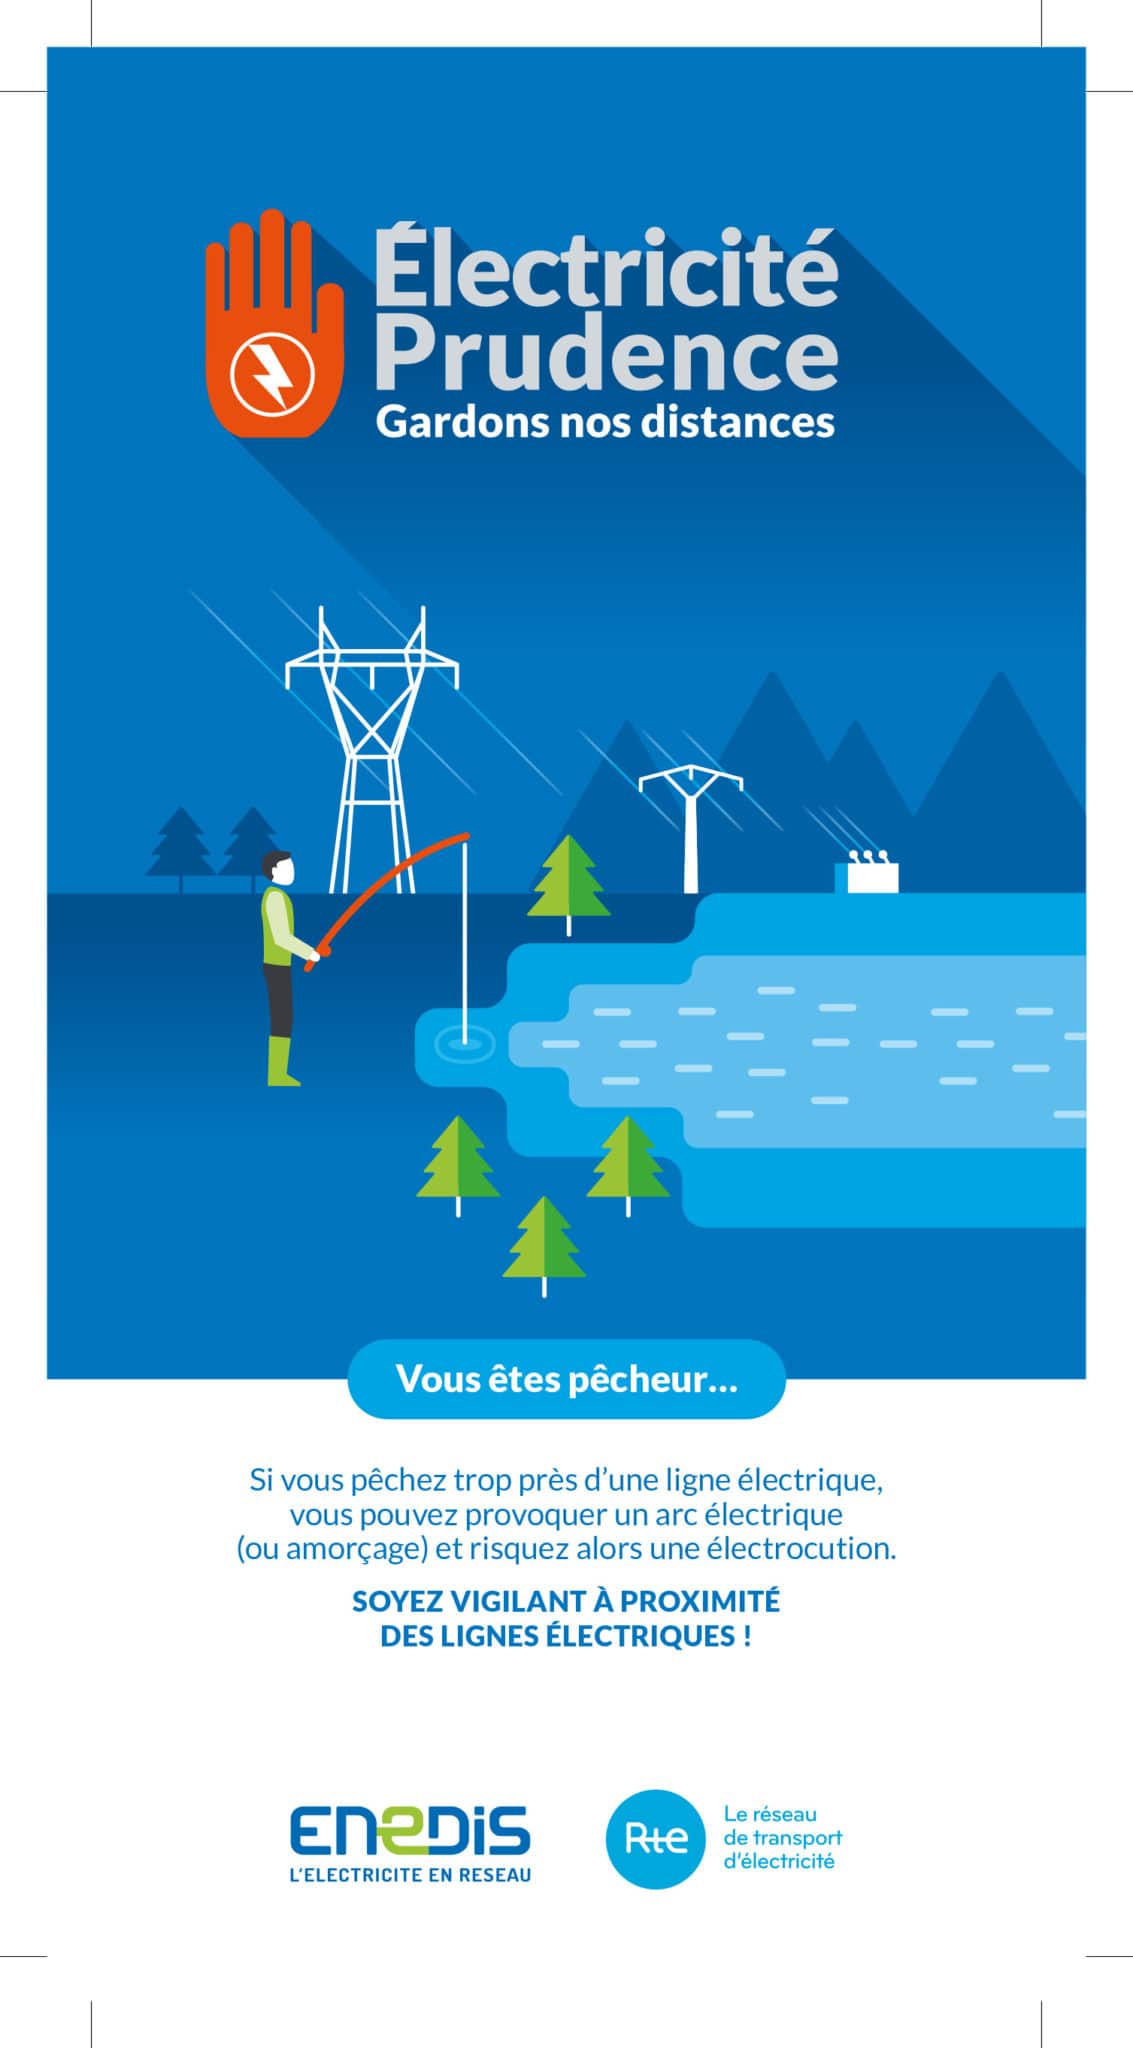 Affiche de prévention pour les pêcheurs par rapports aux ligne électriques